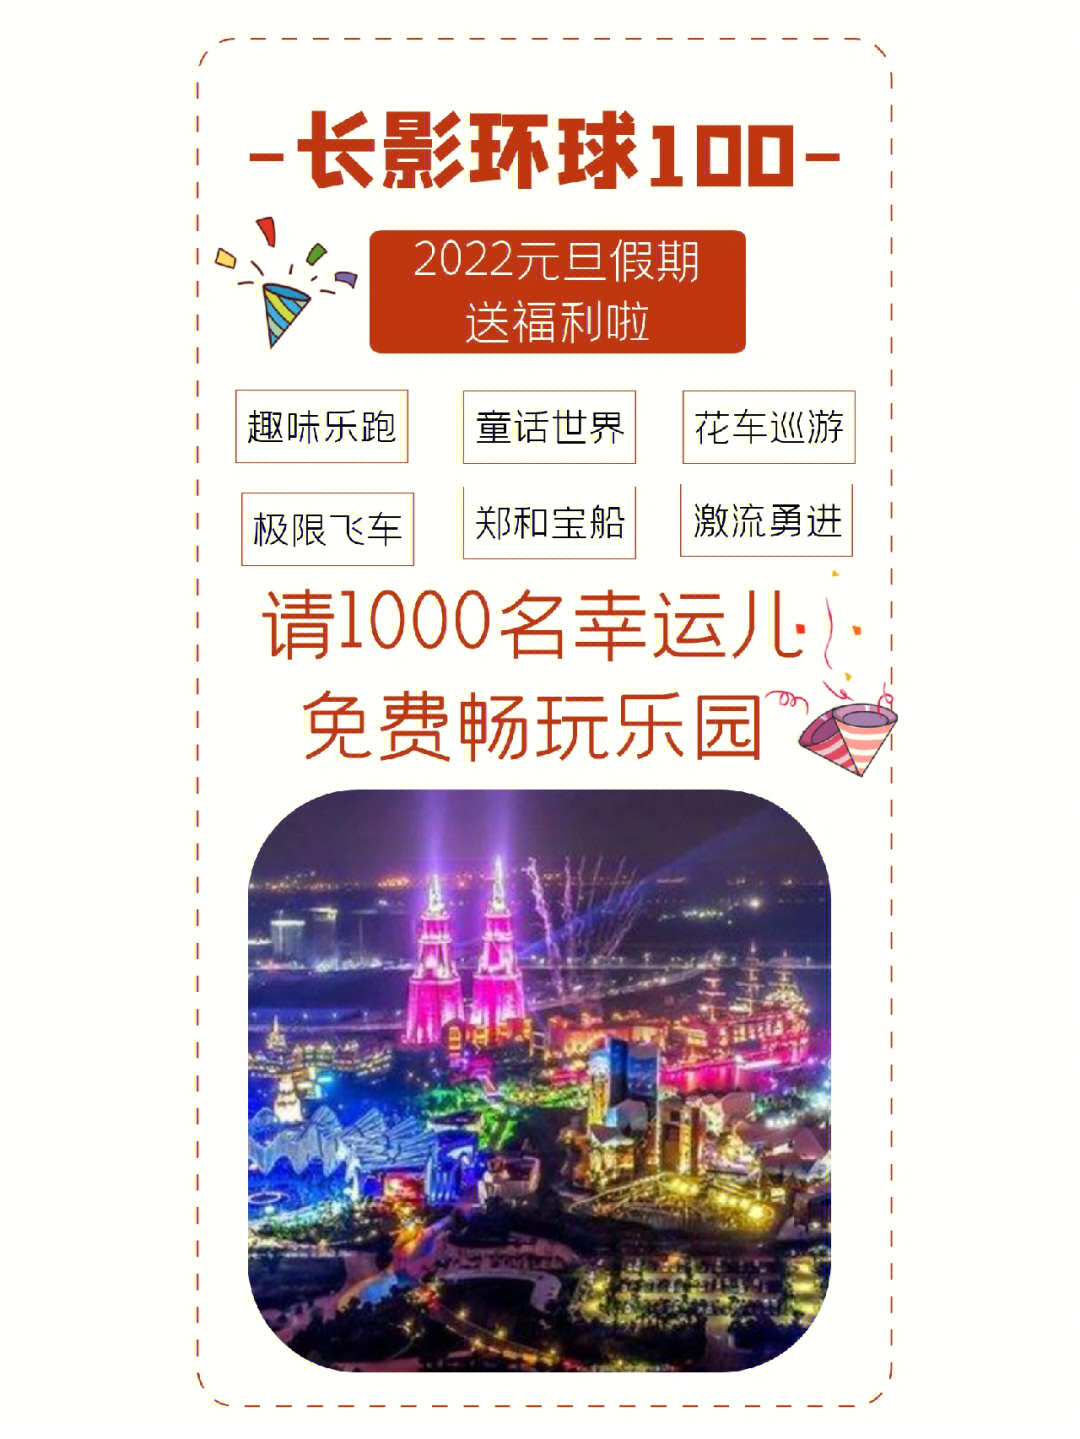 上海环球金融中心观光厅_上海环球港促销中心_上海环球金融中心观光厅门票价格